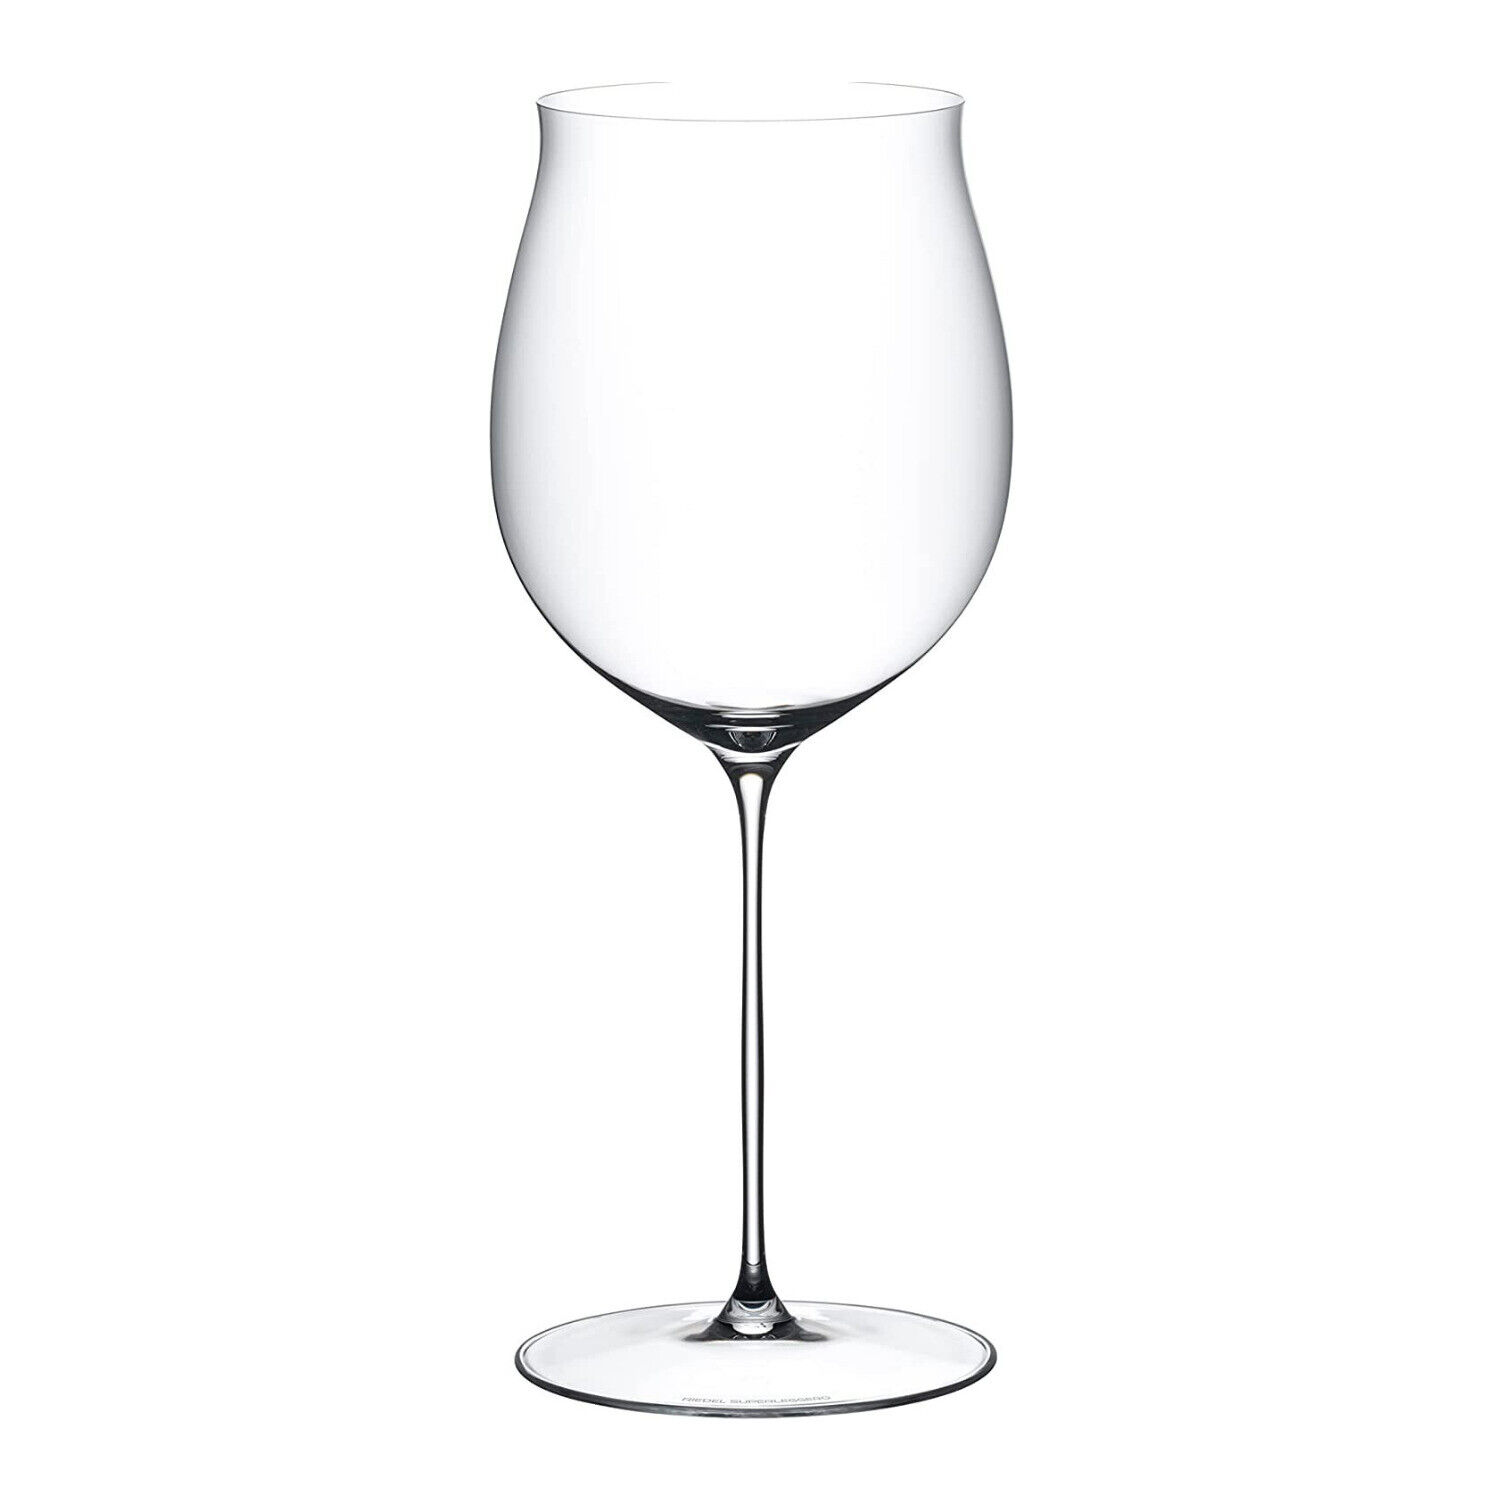 Riedel Supperleggero Burgundy Grand Cru 10.866 In Machine Made Wine Glass